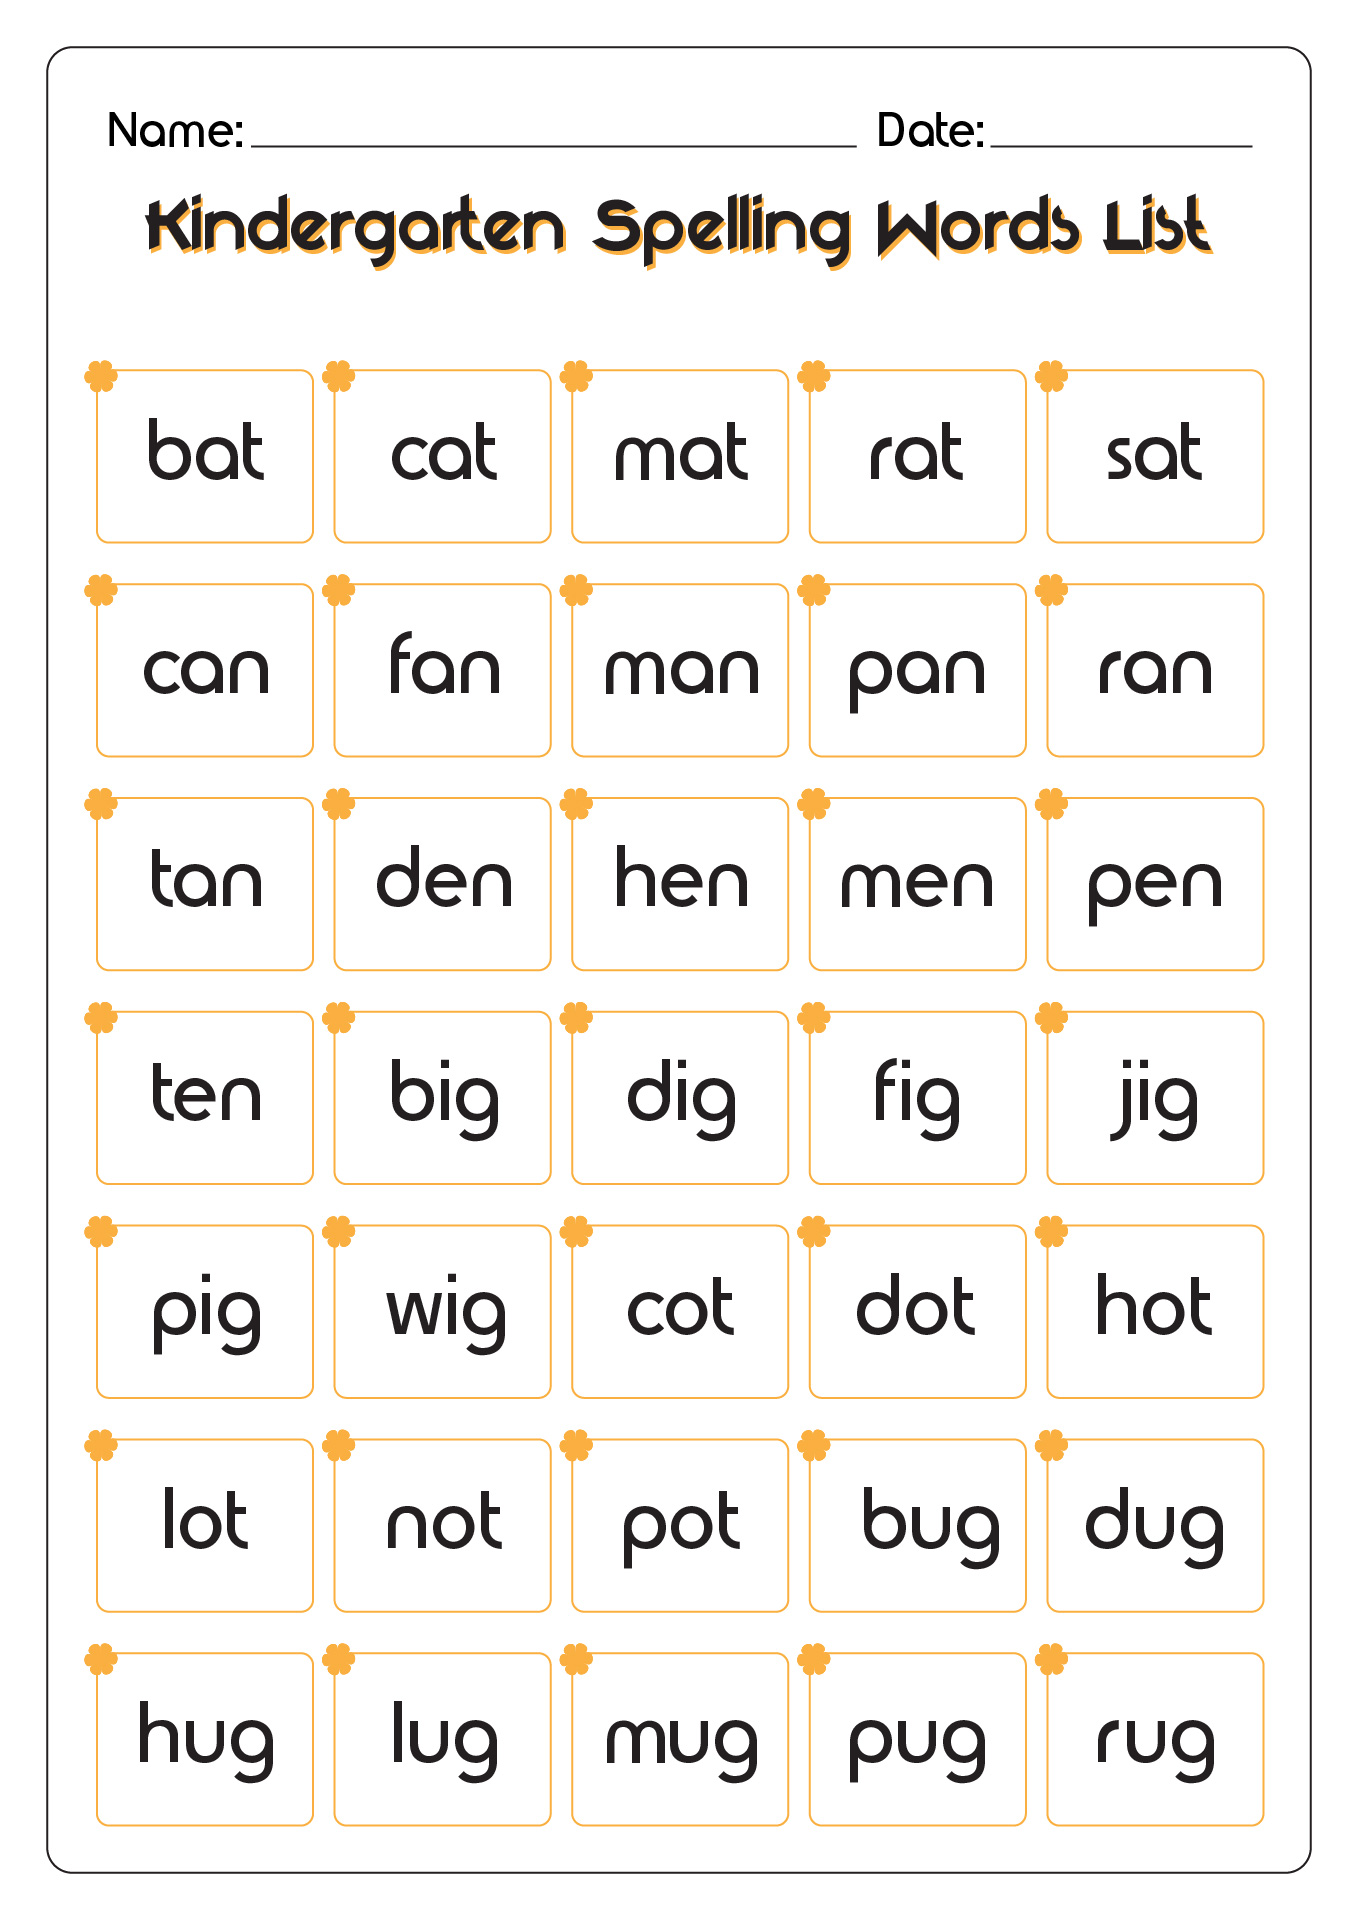 Kindergarten Spelling Words List